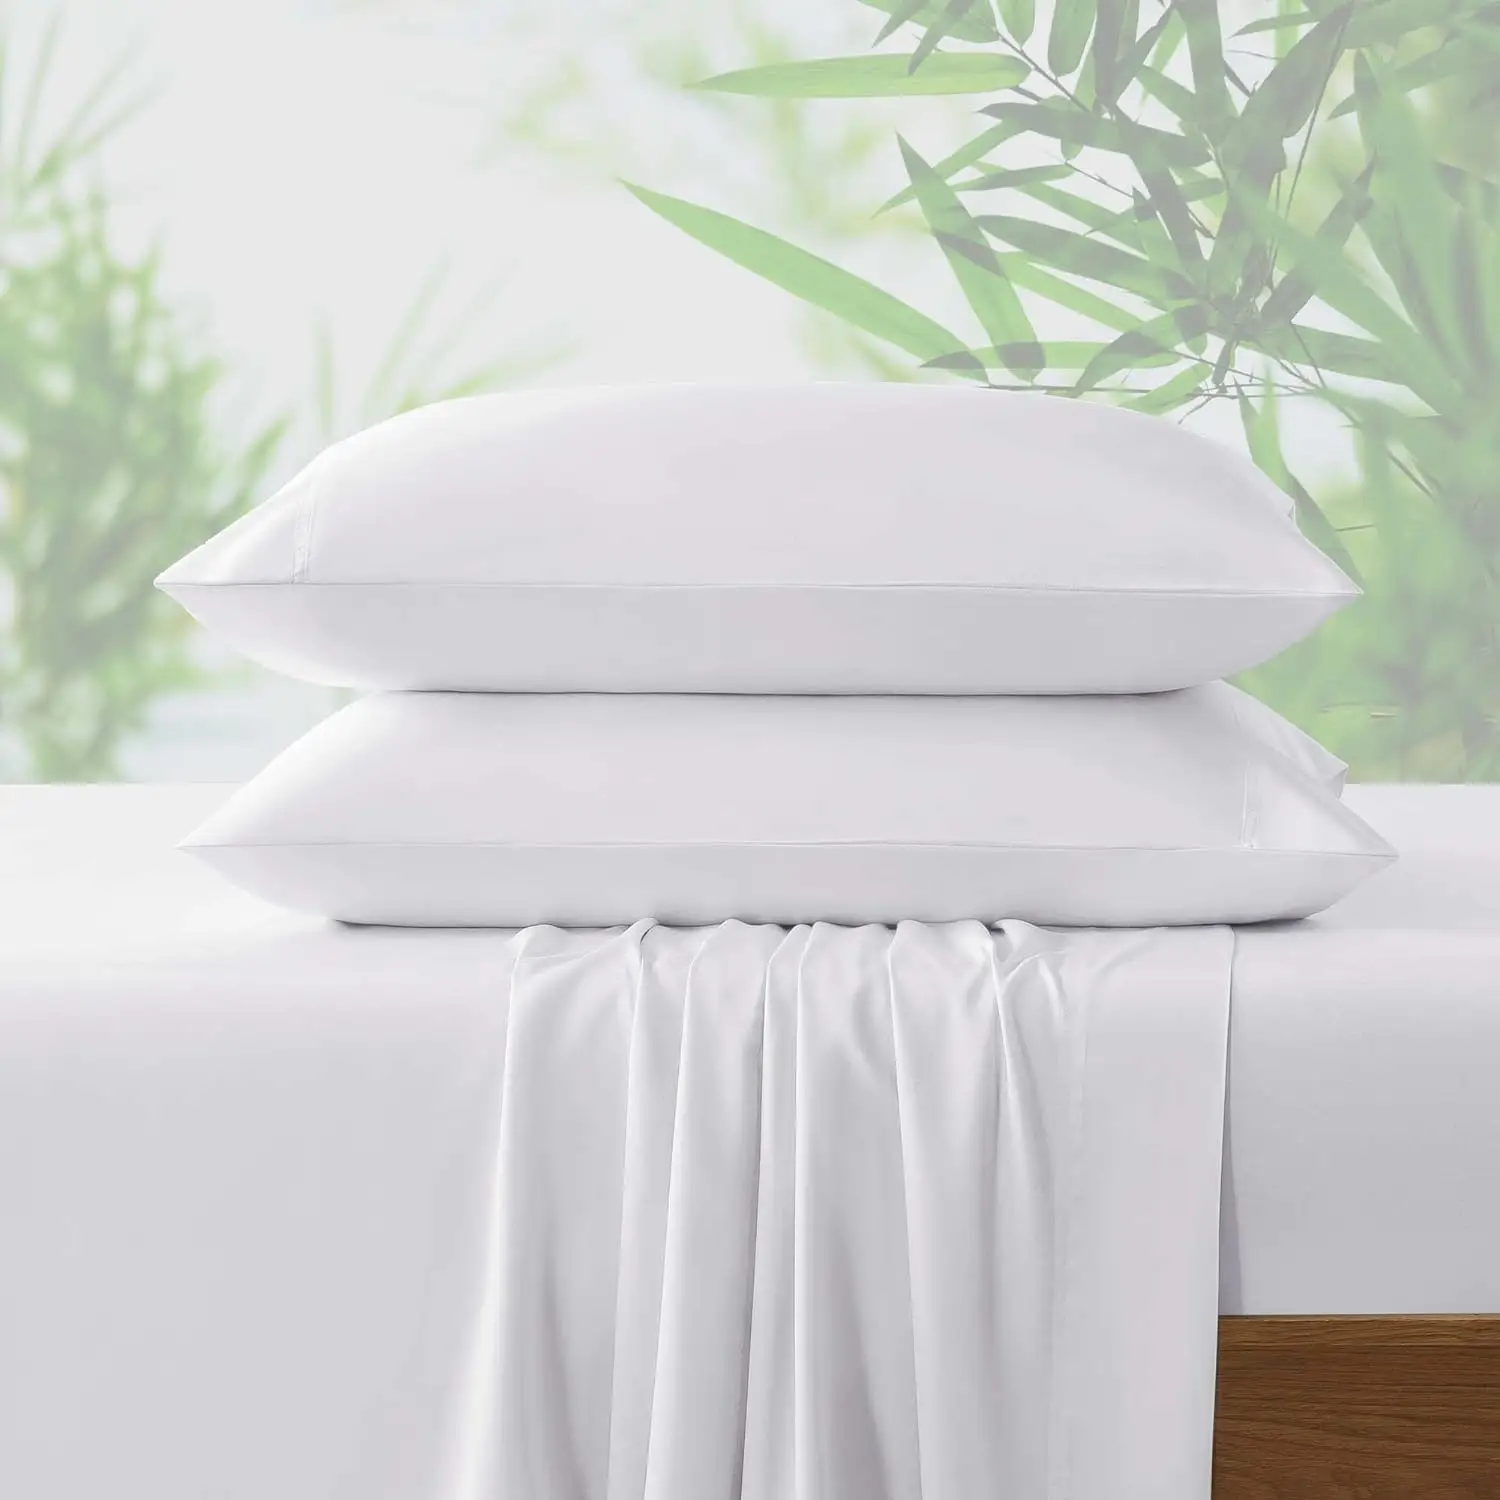 ผ้าปูที่นอนโรงแรม 300 ด้ายนับนุ่ม 100% ไม้ไผ่อินทรีย์ผ้าปูที่นอนชุดเครื่องนอนเป็นผ้าคลุมเตียงไม้ไผ่ผ้าไหม